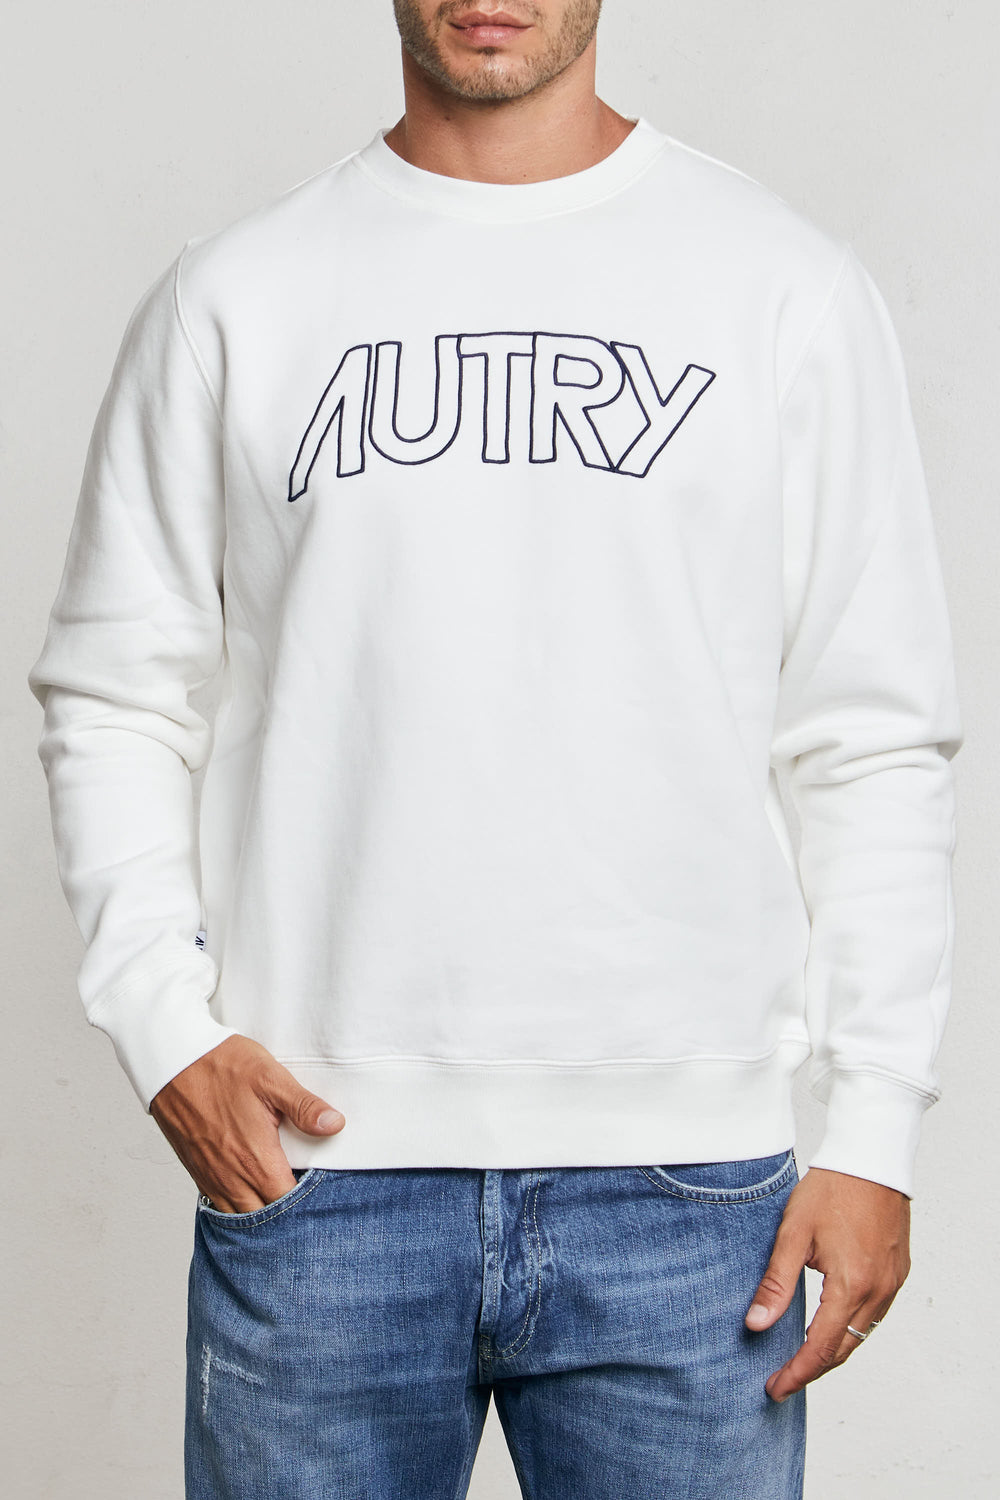 Autry men's sweatshirts online